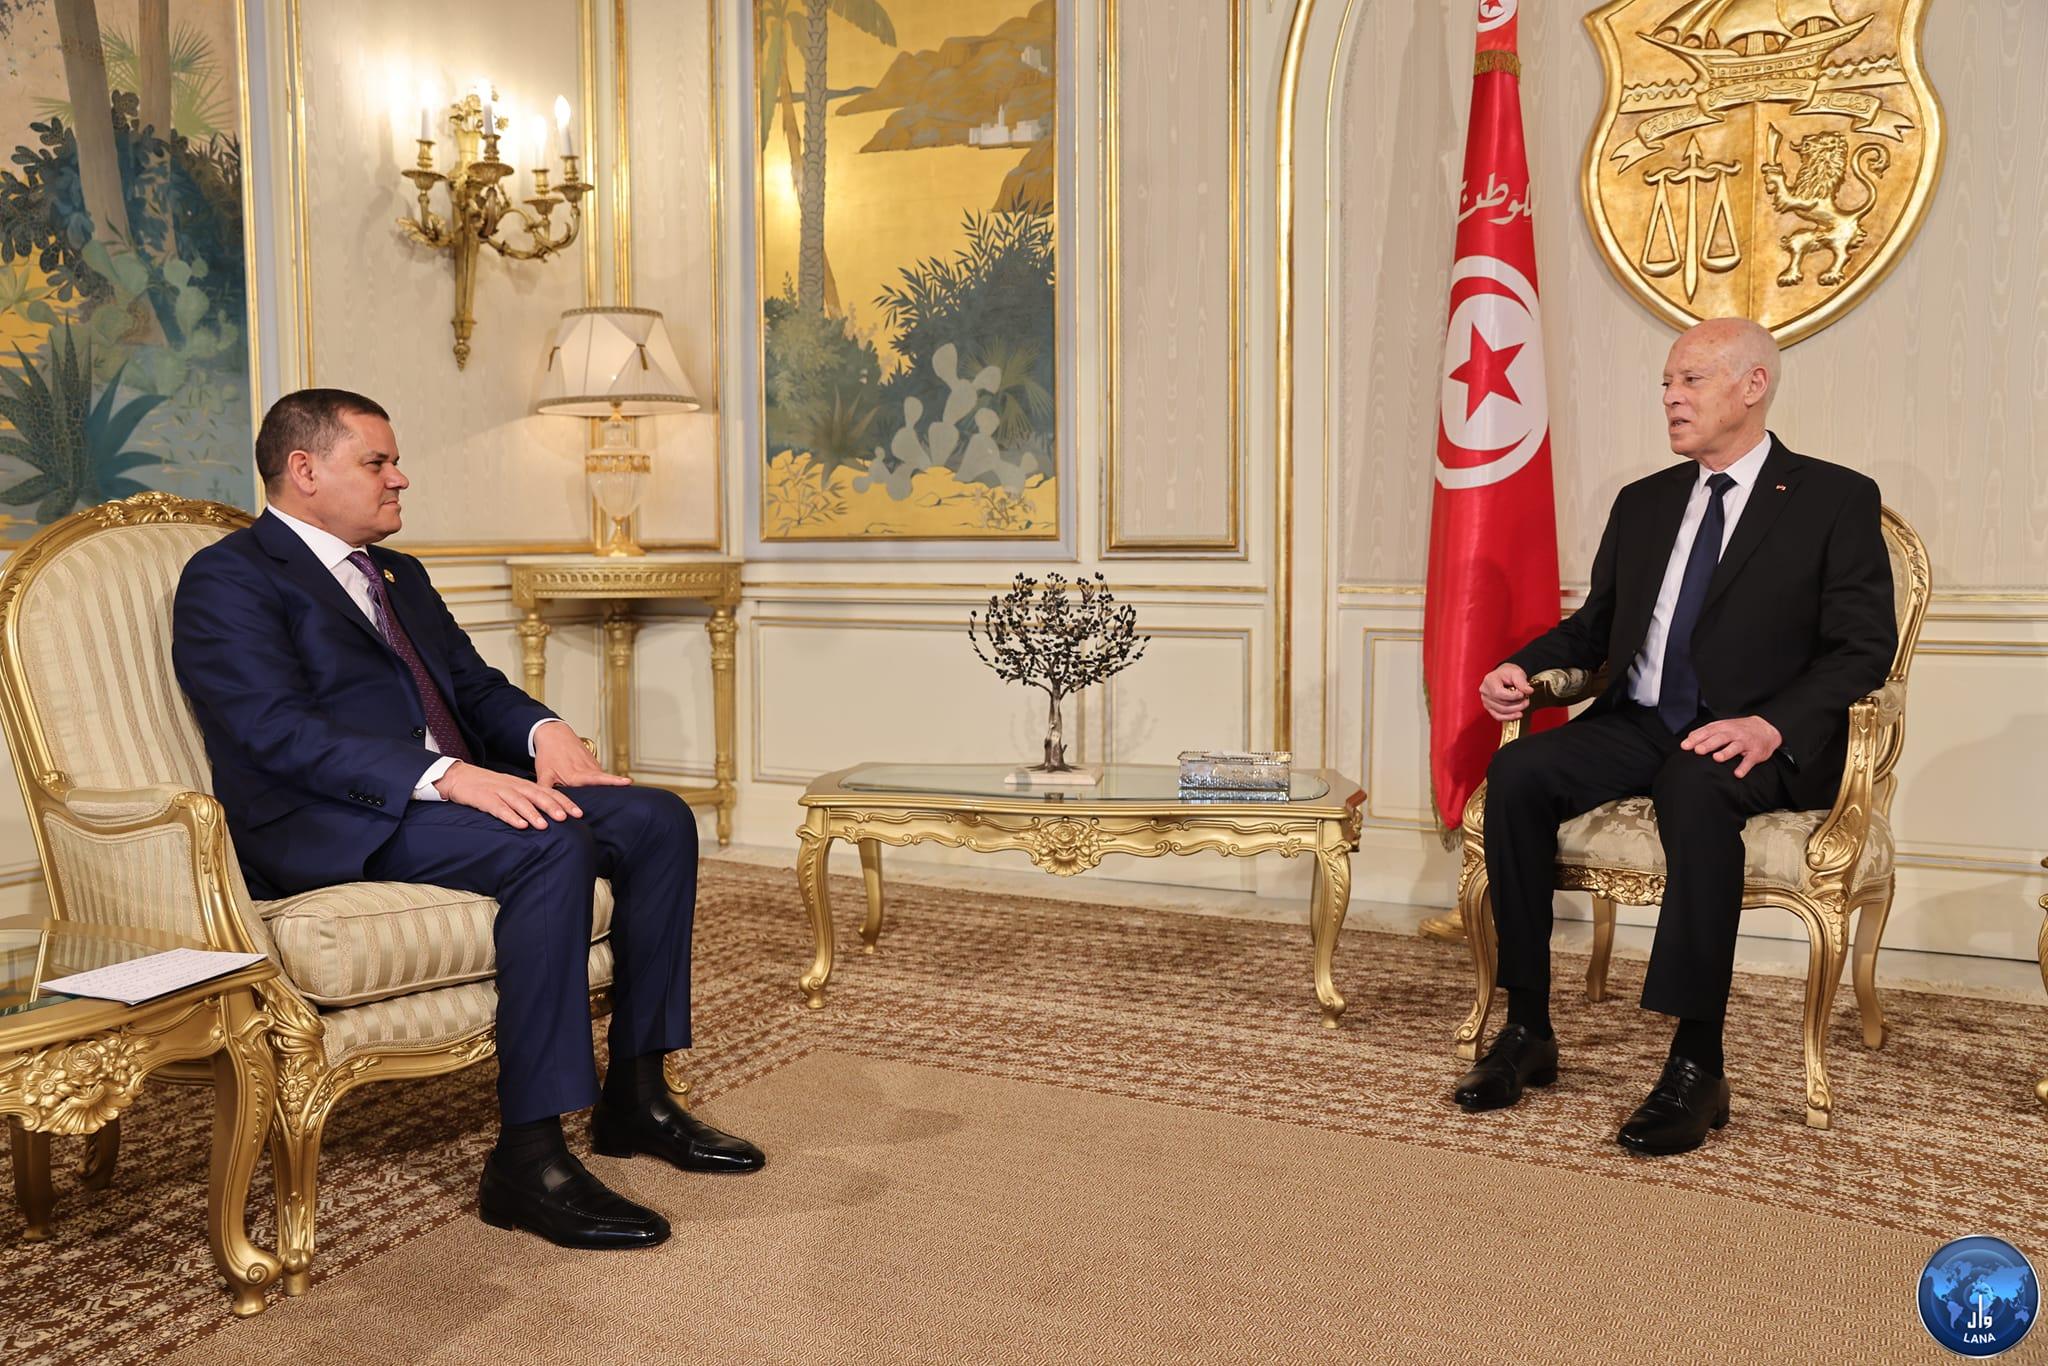  قيس سعيد يستقبل الدبيبة ويرحب بزيارة حكومة الوحدة الوطنية لتونس.